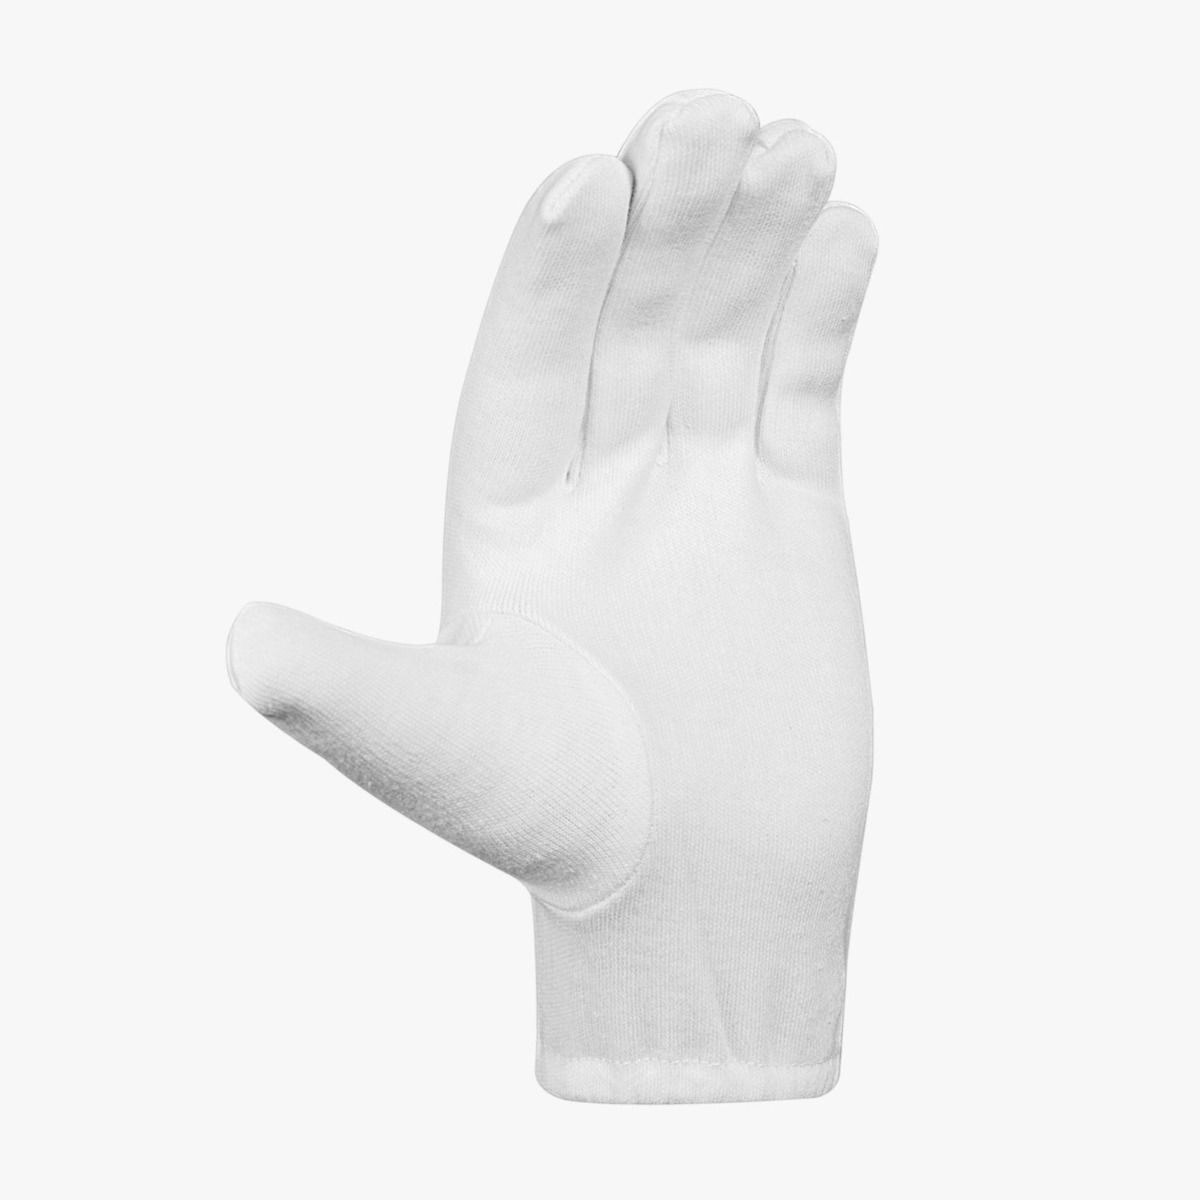 DSC Motion Inner Batting Gloves